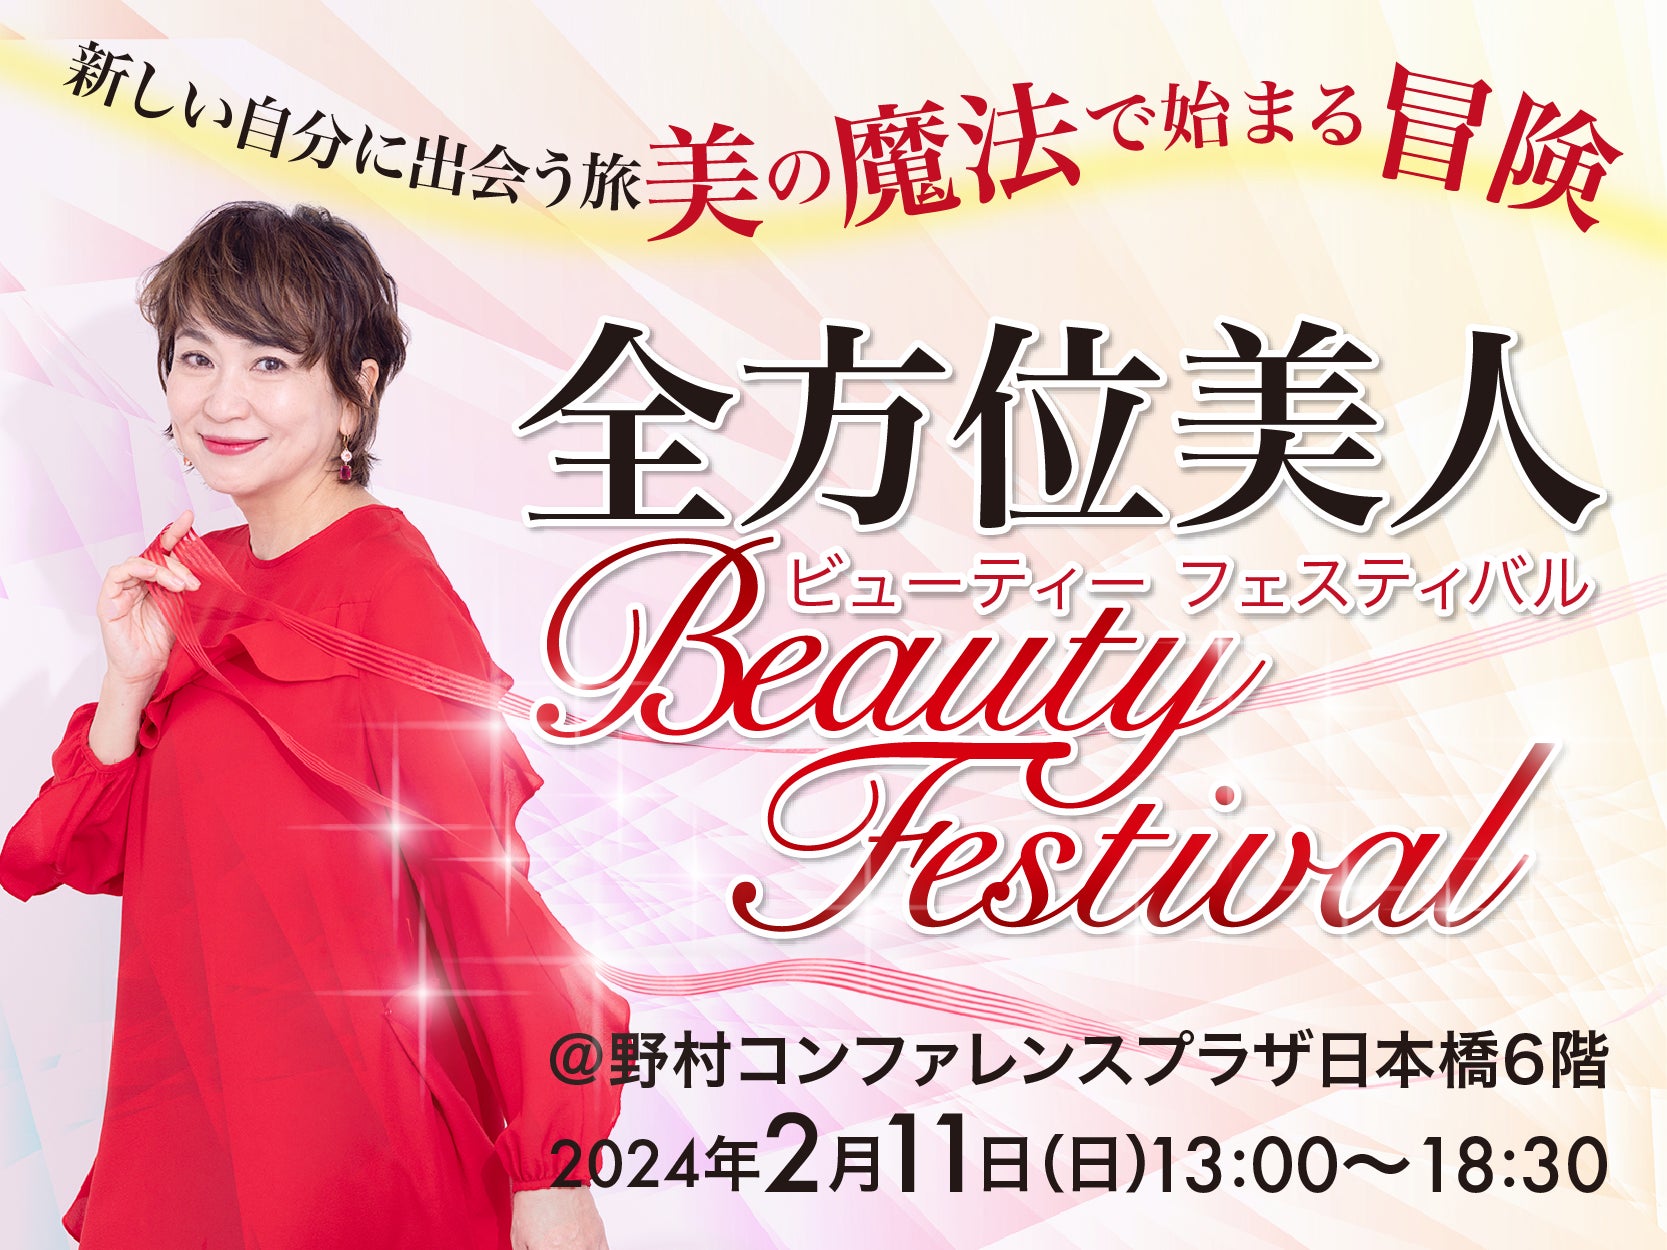 ヘアケアブランド「.SANJUGO」、美容YouTuber・SHOKO主催の「全方位美人Beautyフェスティバル2024」に協賛！